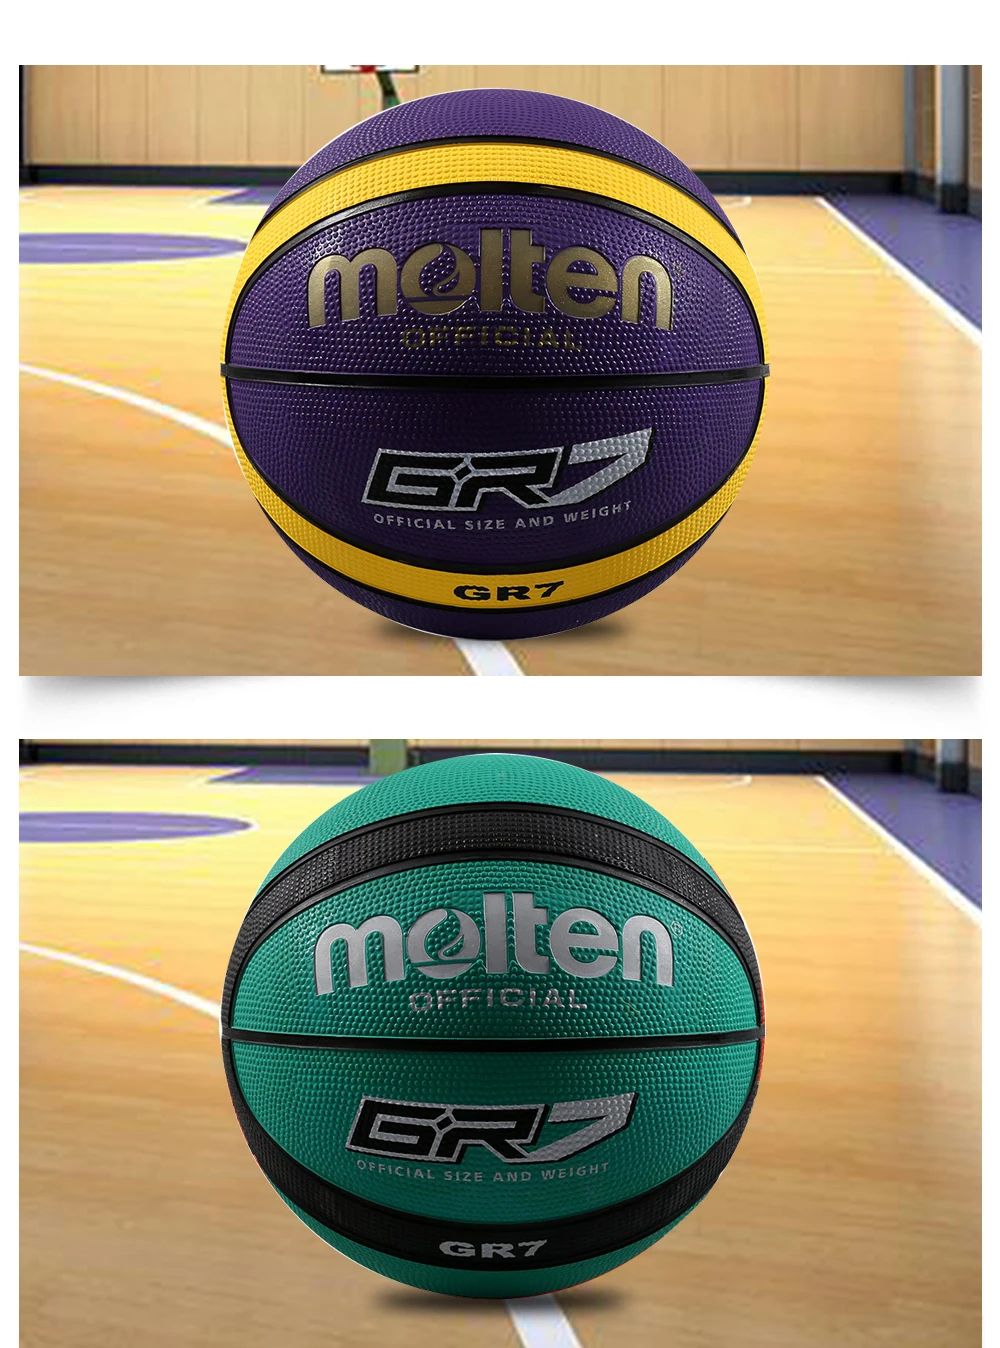 Оригинальный Molten Баскетбол мяч GR7 Высокое качество Подлинная расплавленный резиновая Материал официальный Size7 size6 бесплатно с Чистая сумка